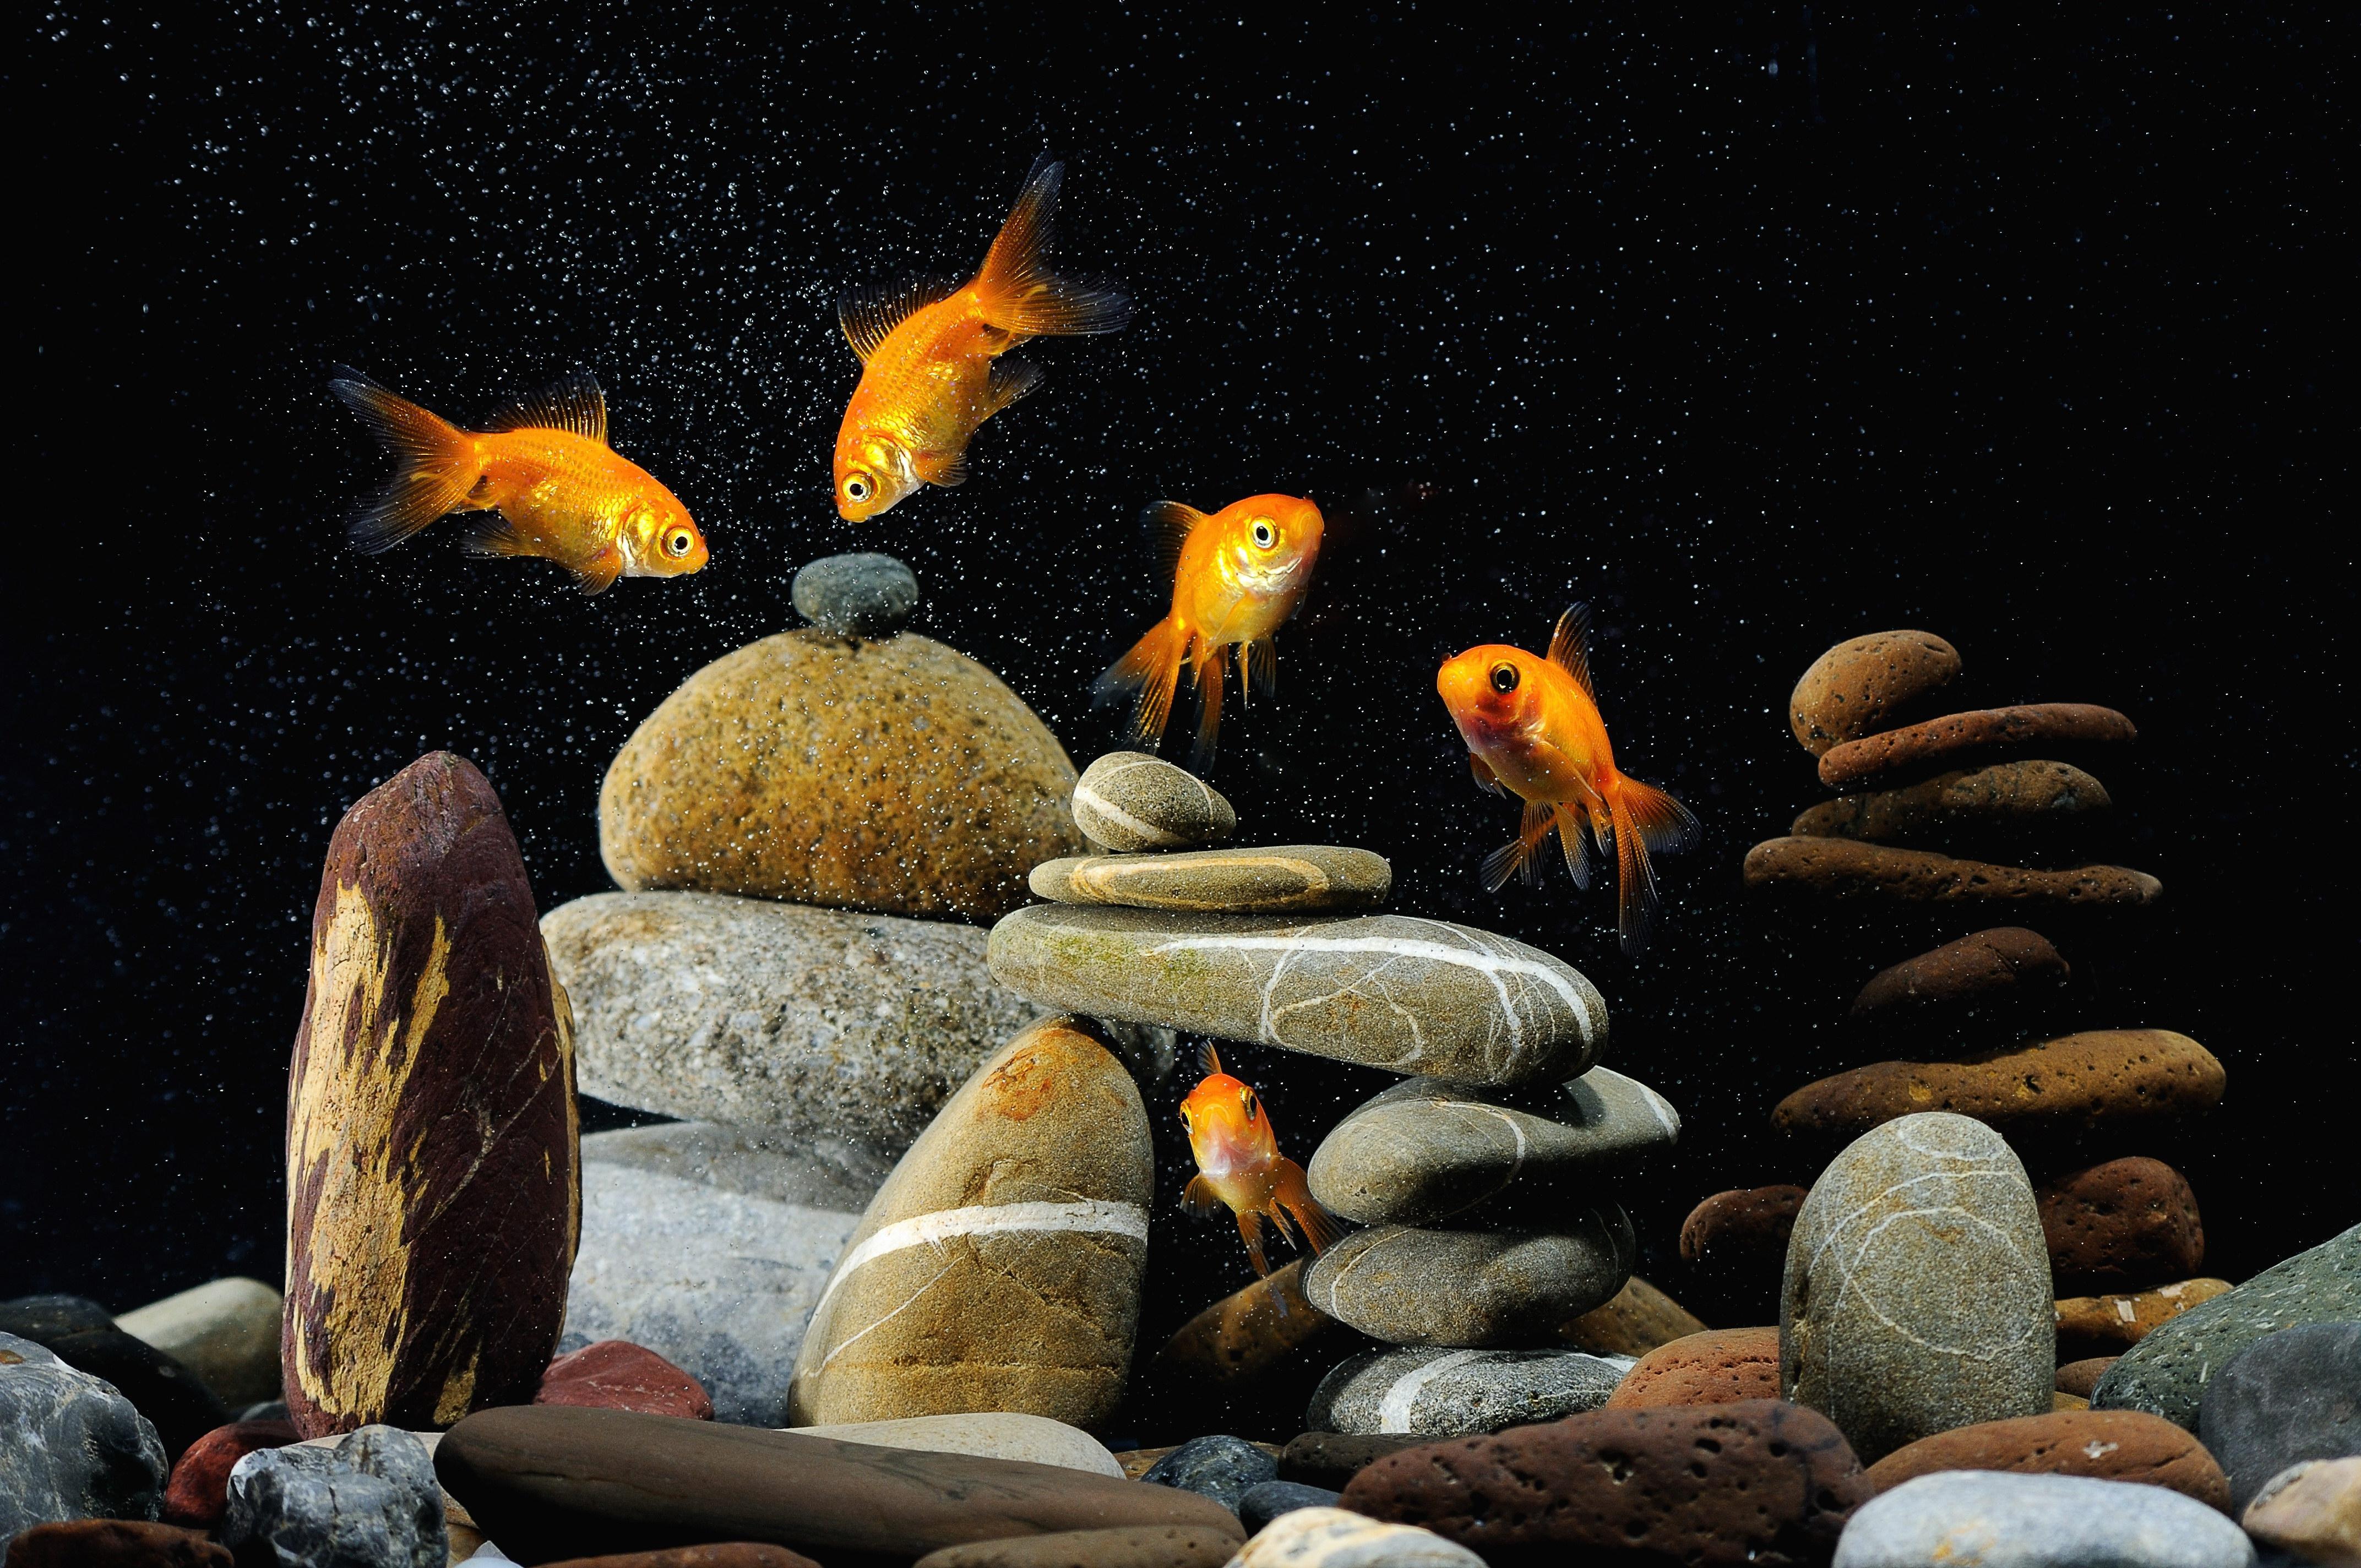 Картинка: Золотая рыбка, камни, галька, пузырьки, плавают, тёмный фон